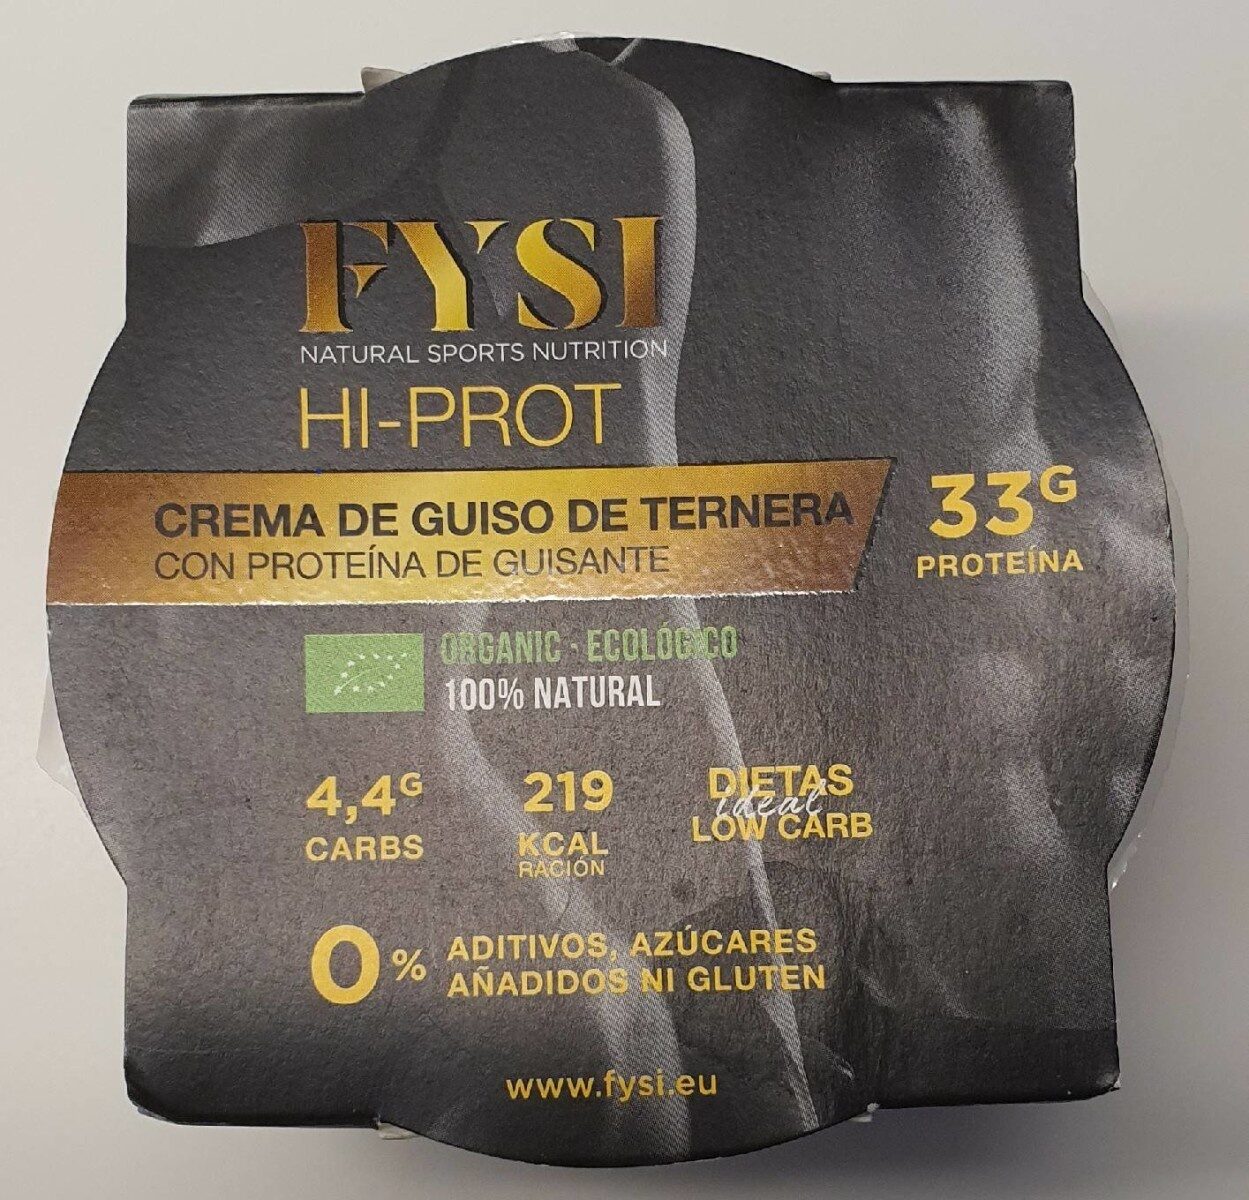 FYSI HI-PROT Crema de guiso de ternera con proteína de guisante - Producte - es